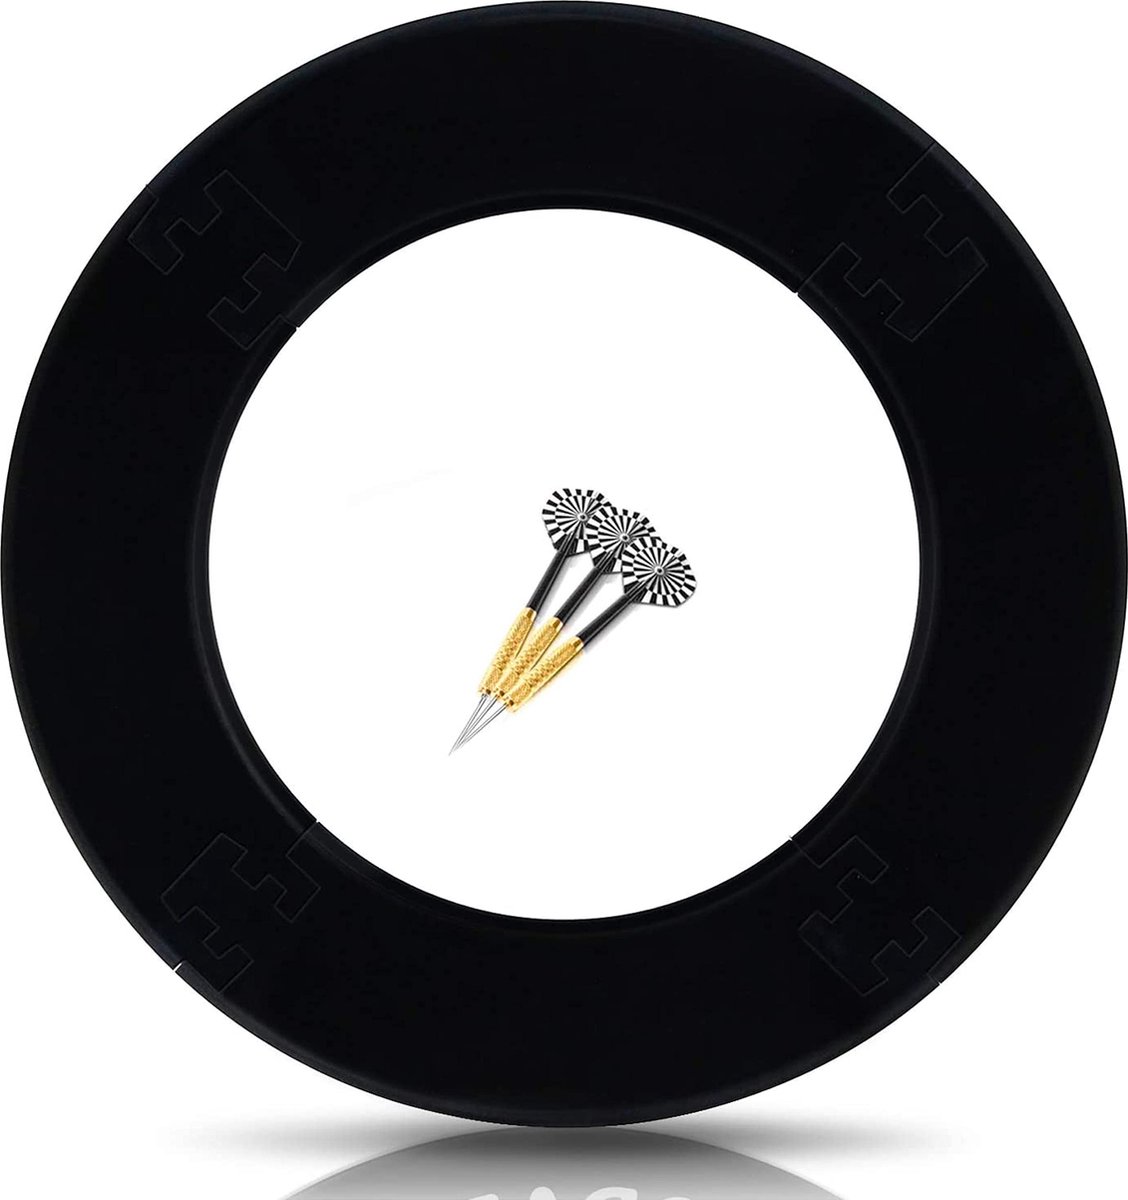 ProDarts Dart Surround Voor Alle Merken Dartborden - Dart Catching Ring In Zwart - Hoge Kwaliteit Stabiele Surround - Wandbescherming Voor Het Dartbord Zonder Extra Bevestiging - Professionele Look